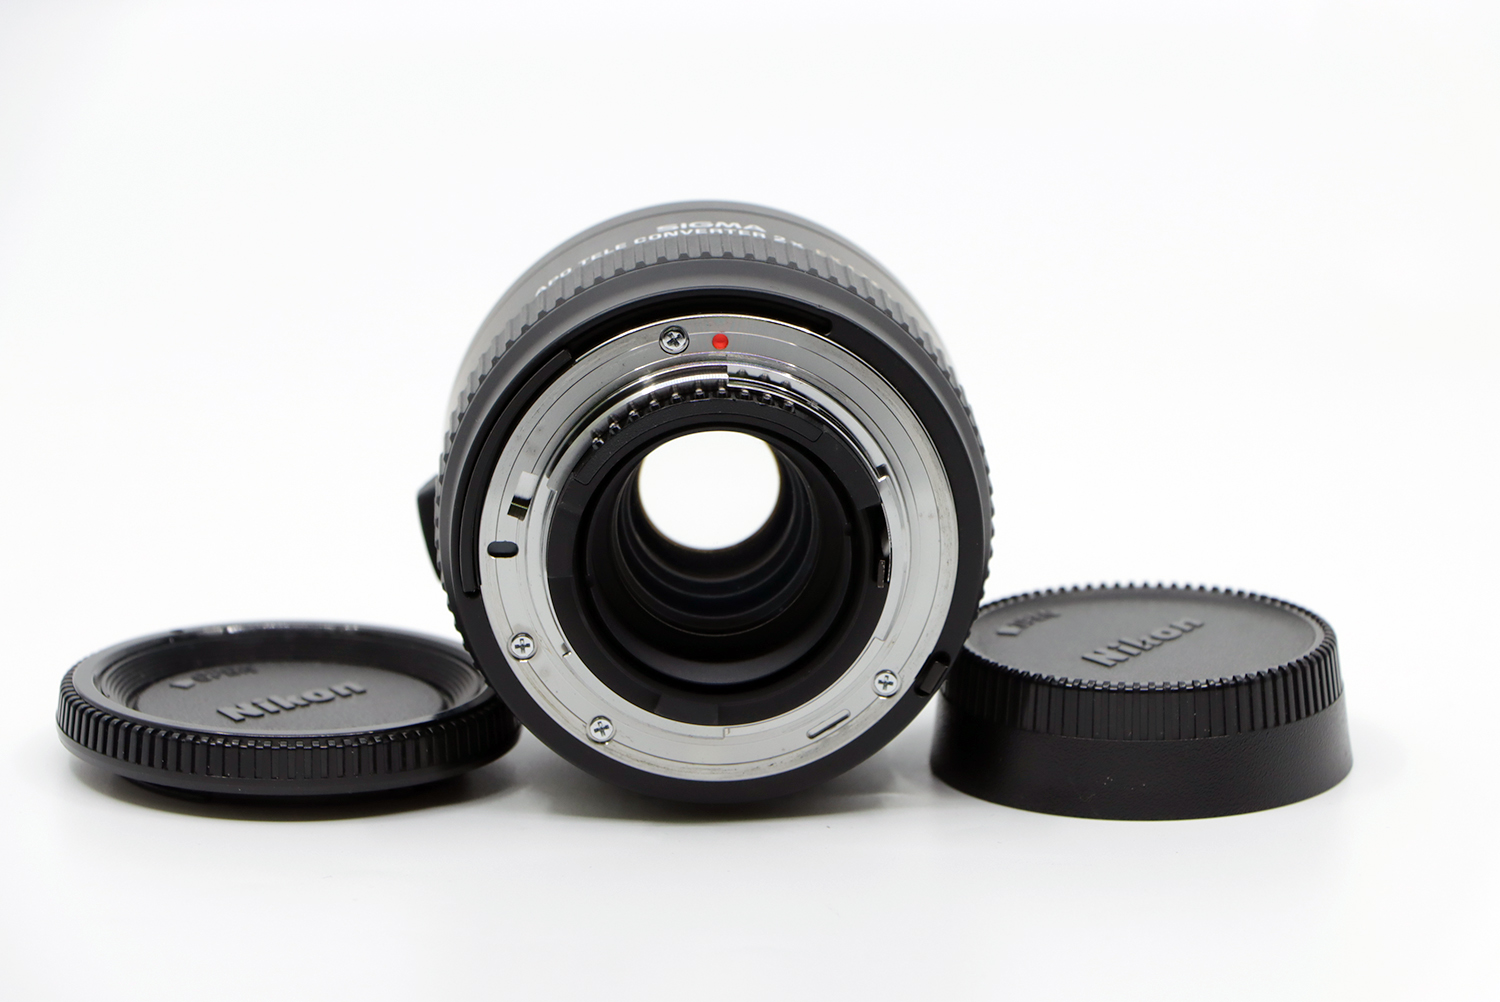 SIGMA APO Teleconverter 2x EX DG pour Nikon | IMG_7875.JPG